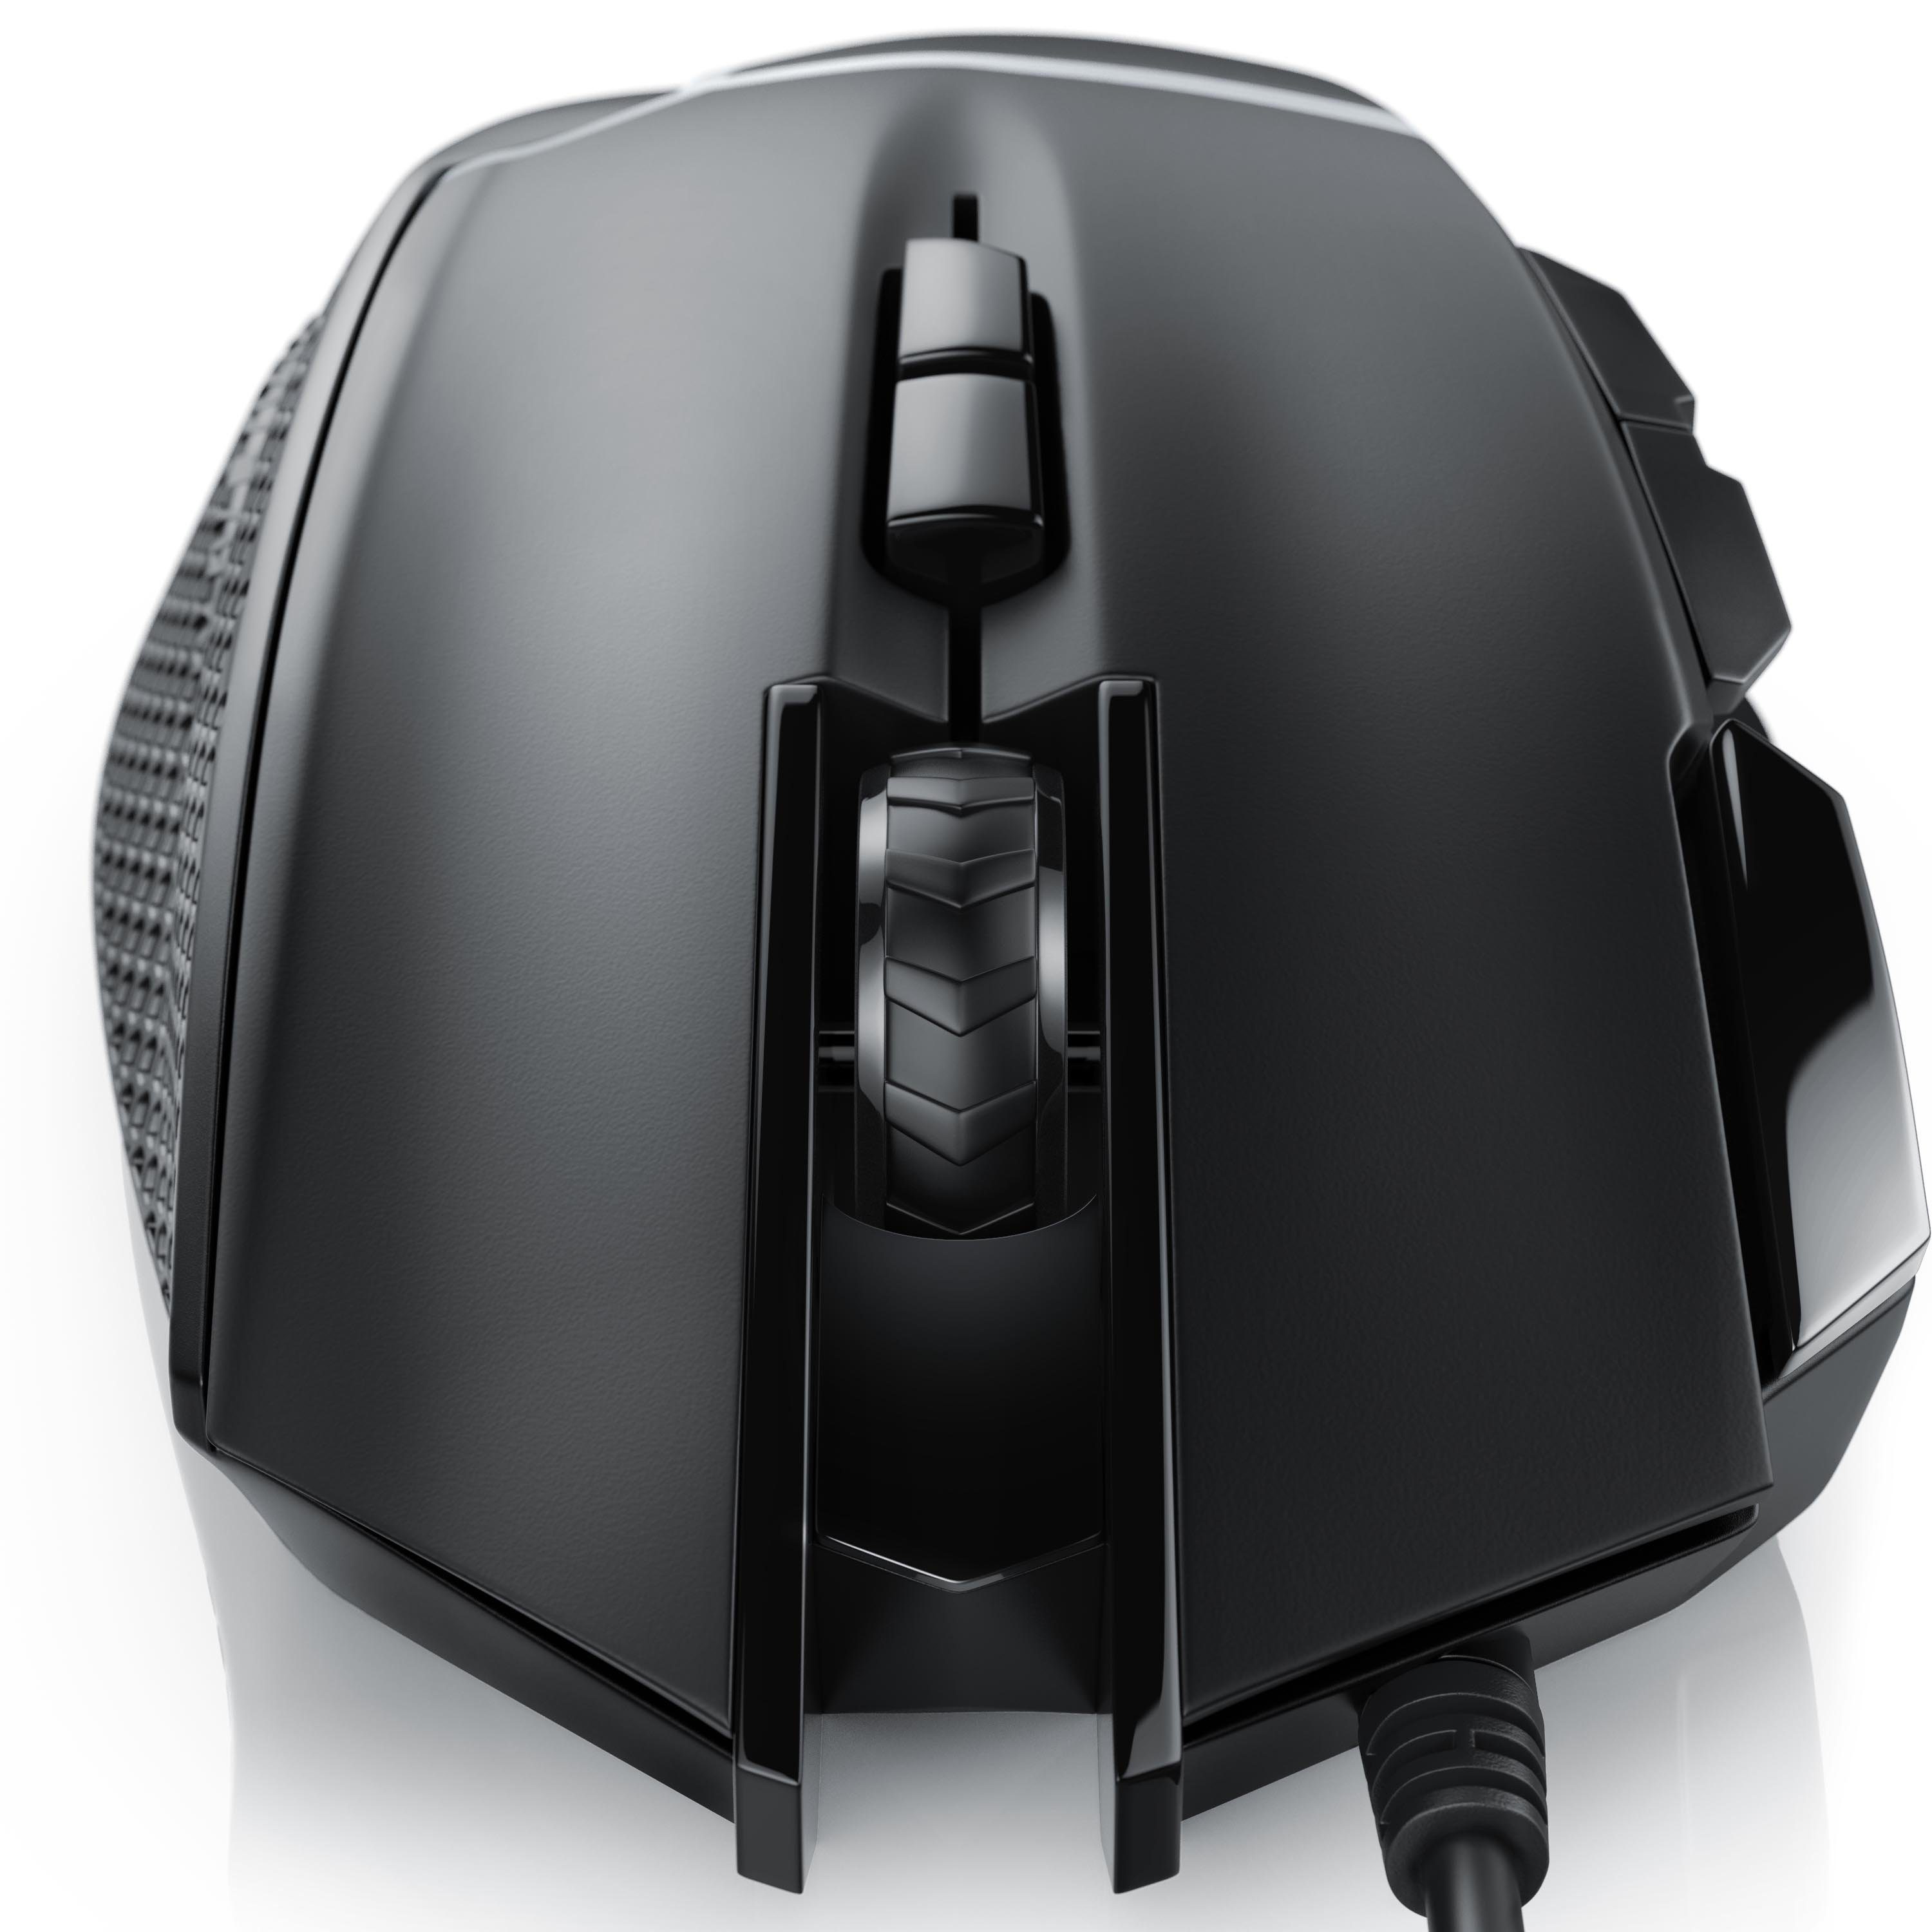 CSL Gaming-Maus (kabelgebunden, 500 dpi, Gewichten) 3200 ergonomisch, wählbar, dpi, Abtastrate Mouse inkl